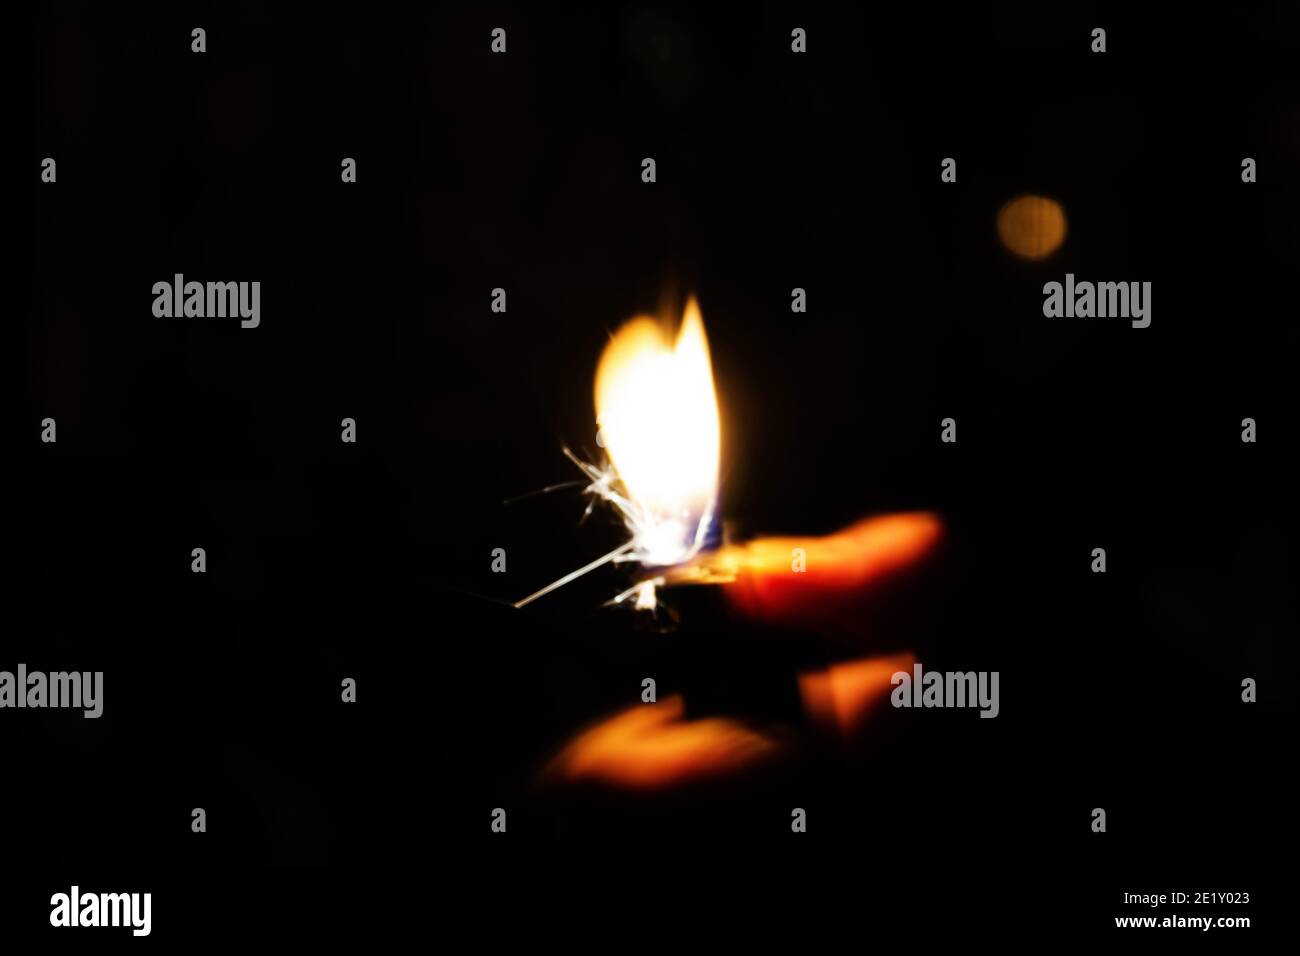 Une femme allume un briquet dans une pièce sombre. Photo conceptuelle et créative avec effet longue exposition. Banque D'Images